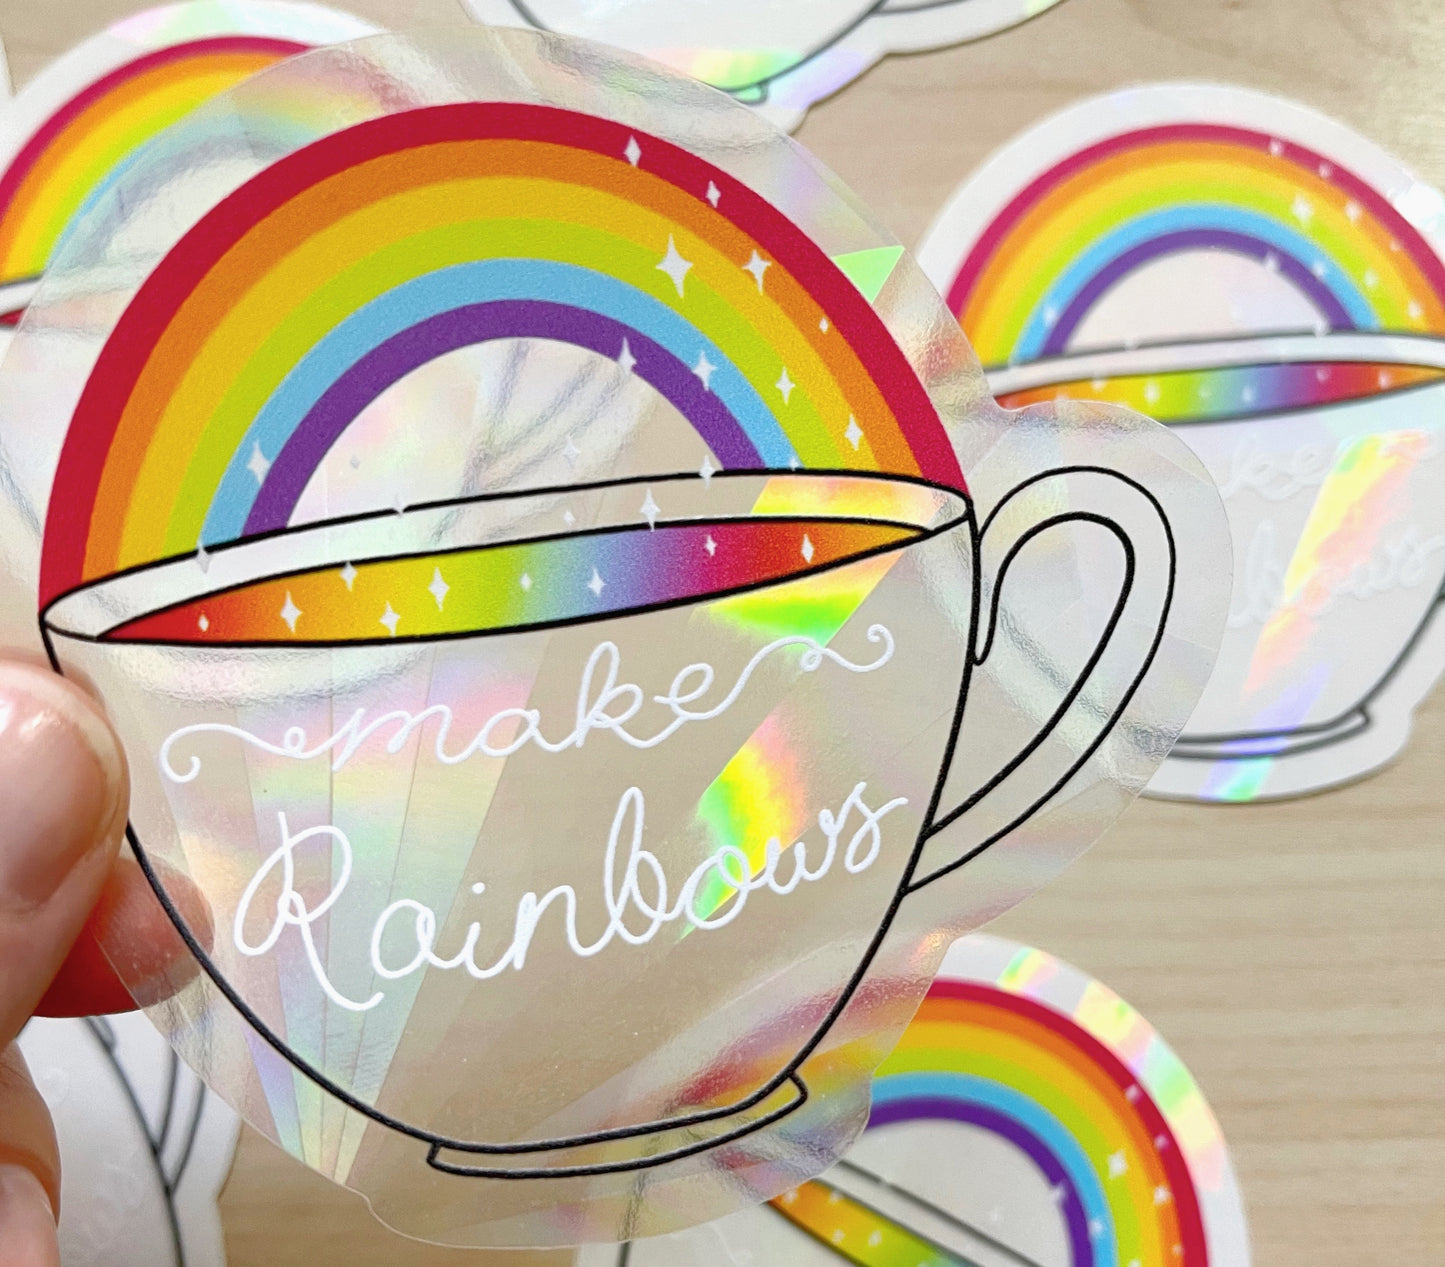 Make Rainbows Suncatcher Sticker